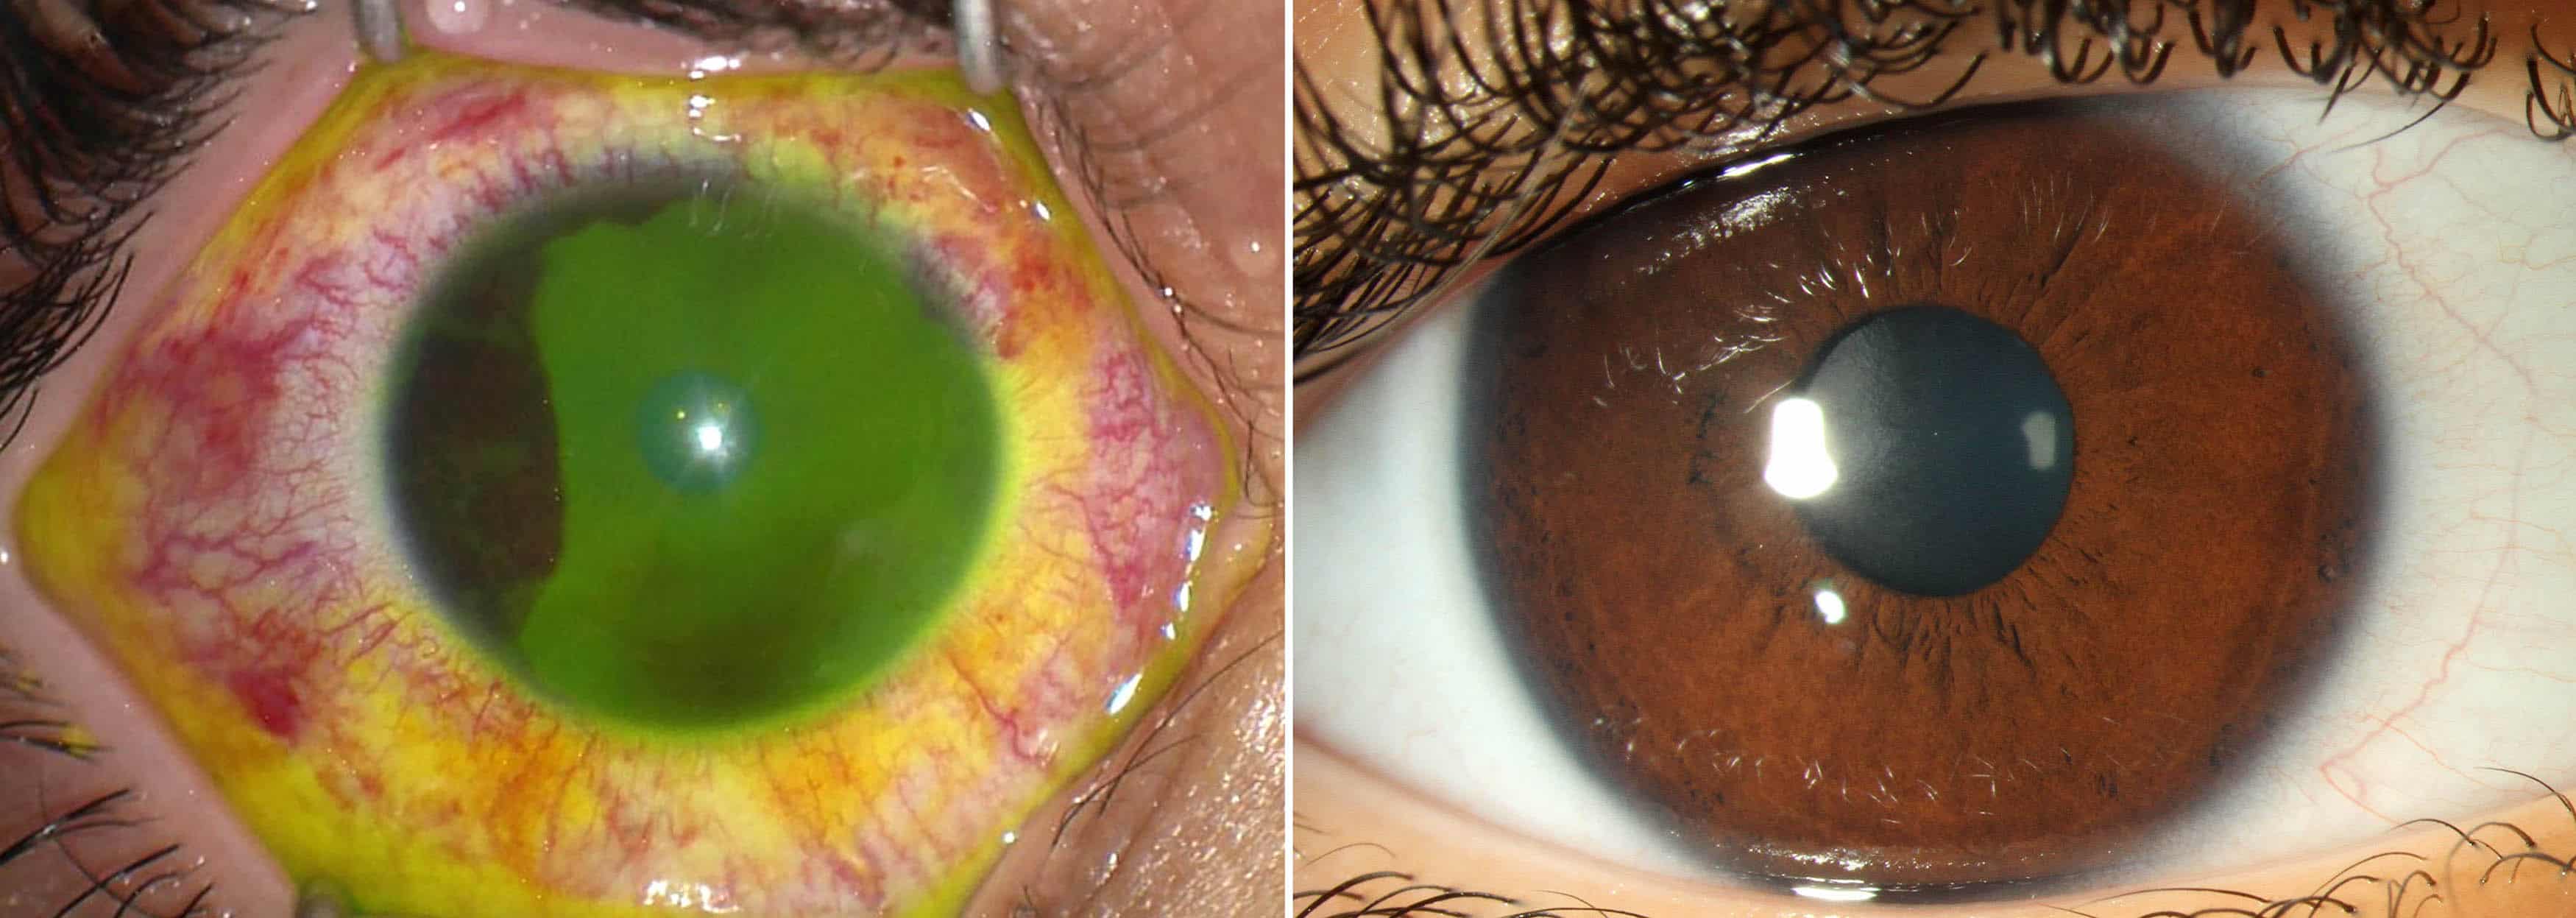 Odborníci varujú, že dezinfekčné prostriedky na ruky môžu u detí viesť k vážnym poraneniam očí